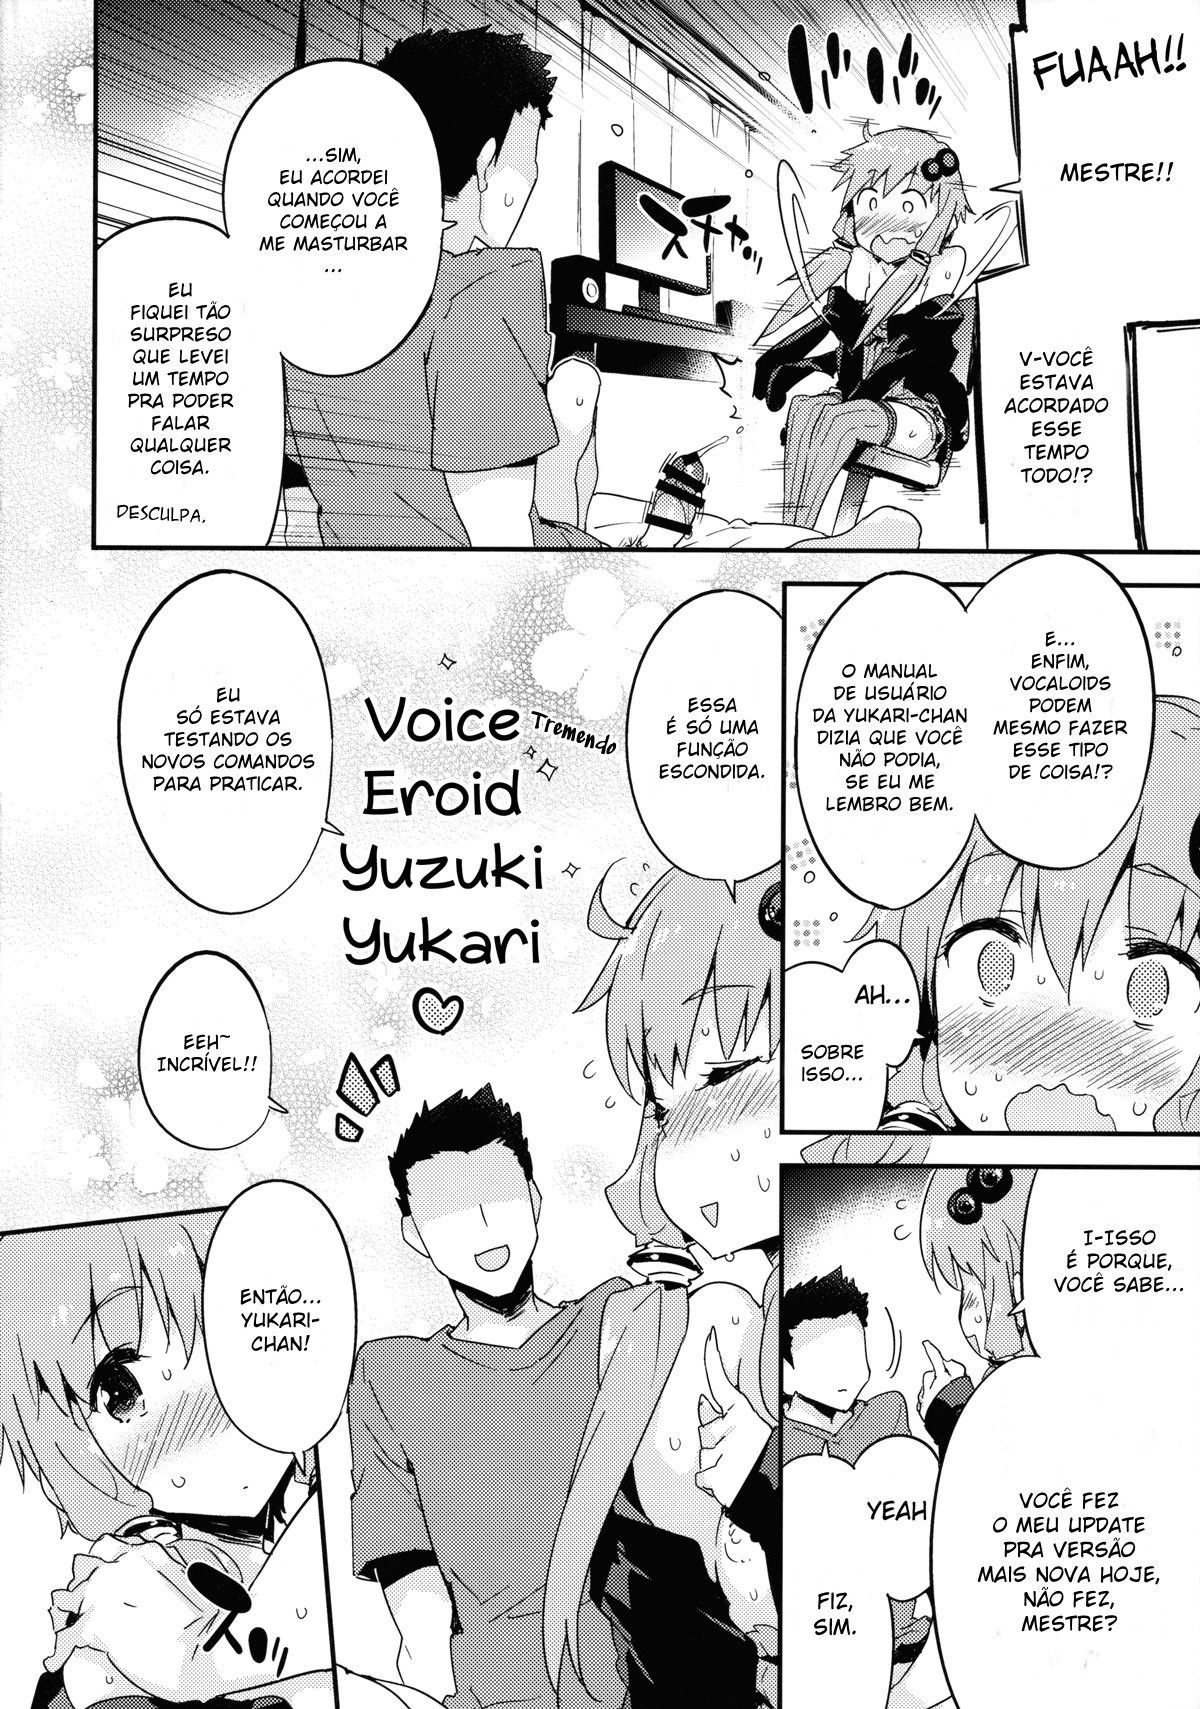 Voice Eroid + Sex Yuzuki Yukari